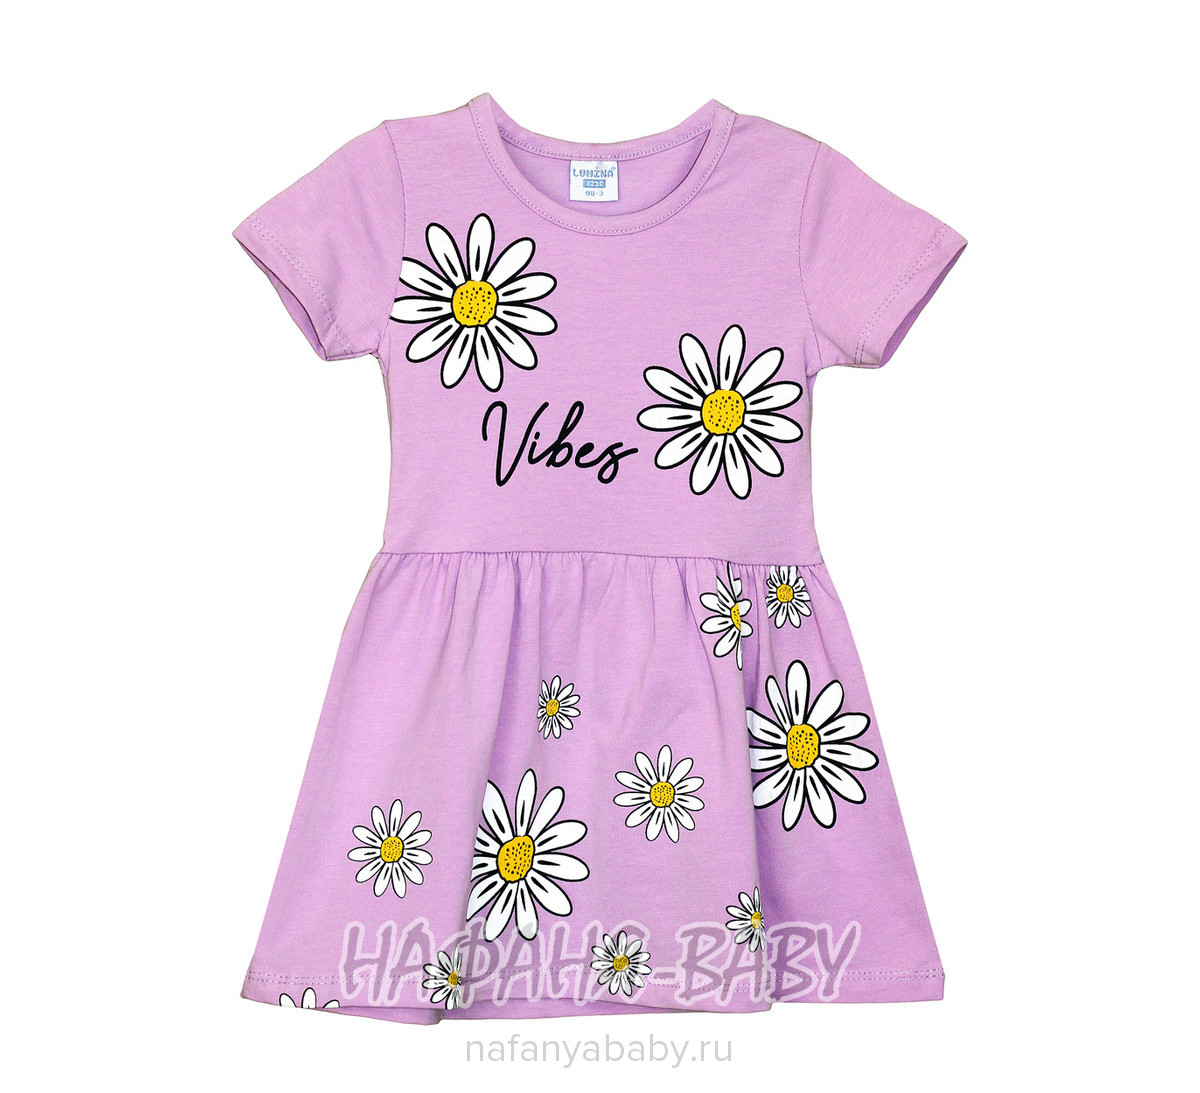 Платье детское LUMINA, купить в интернет магазине Нафаня. арт: 5076 сиреневый